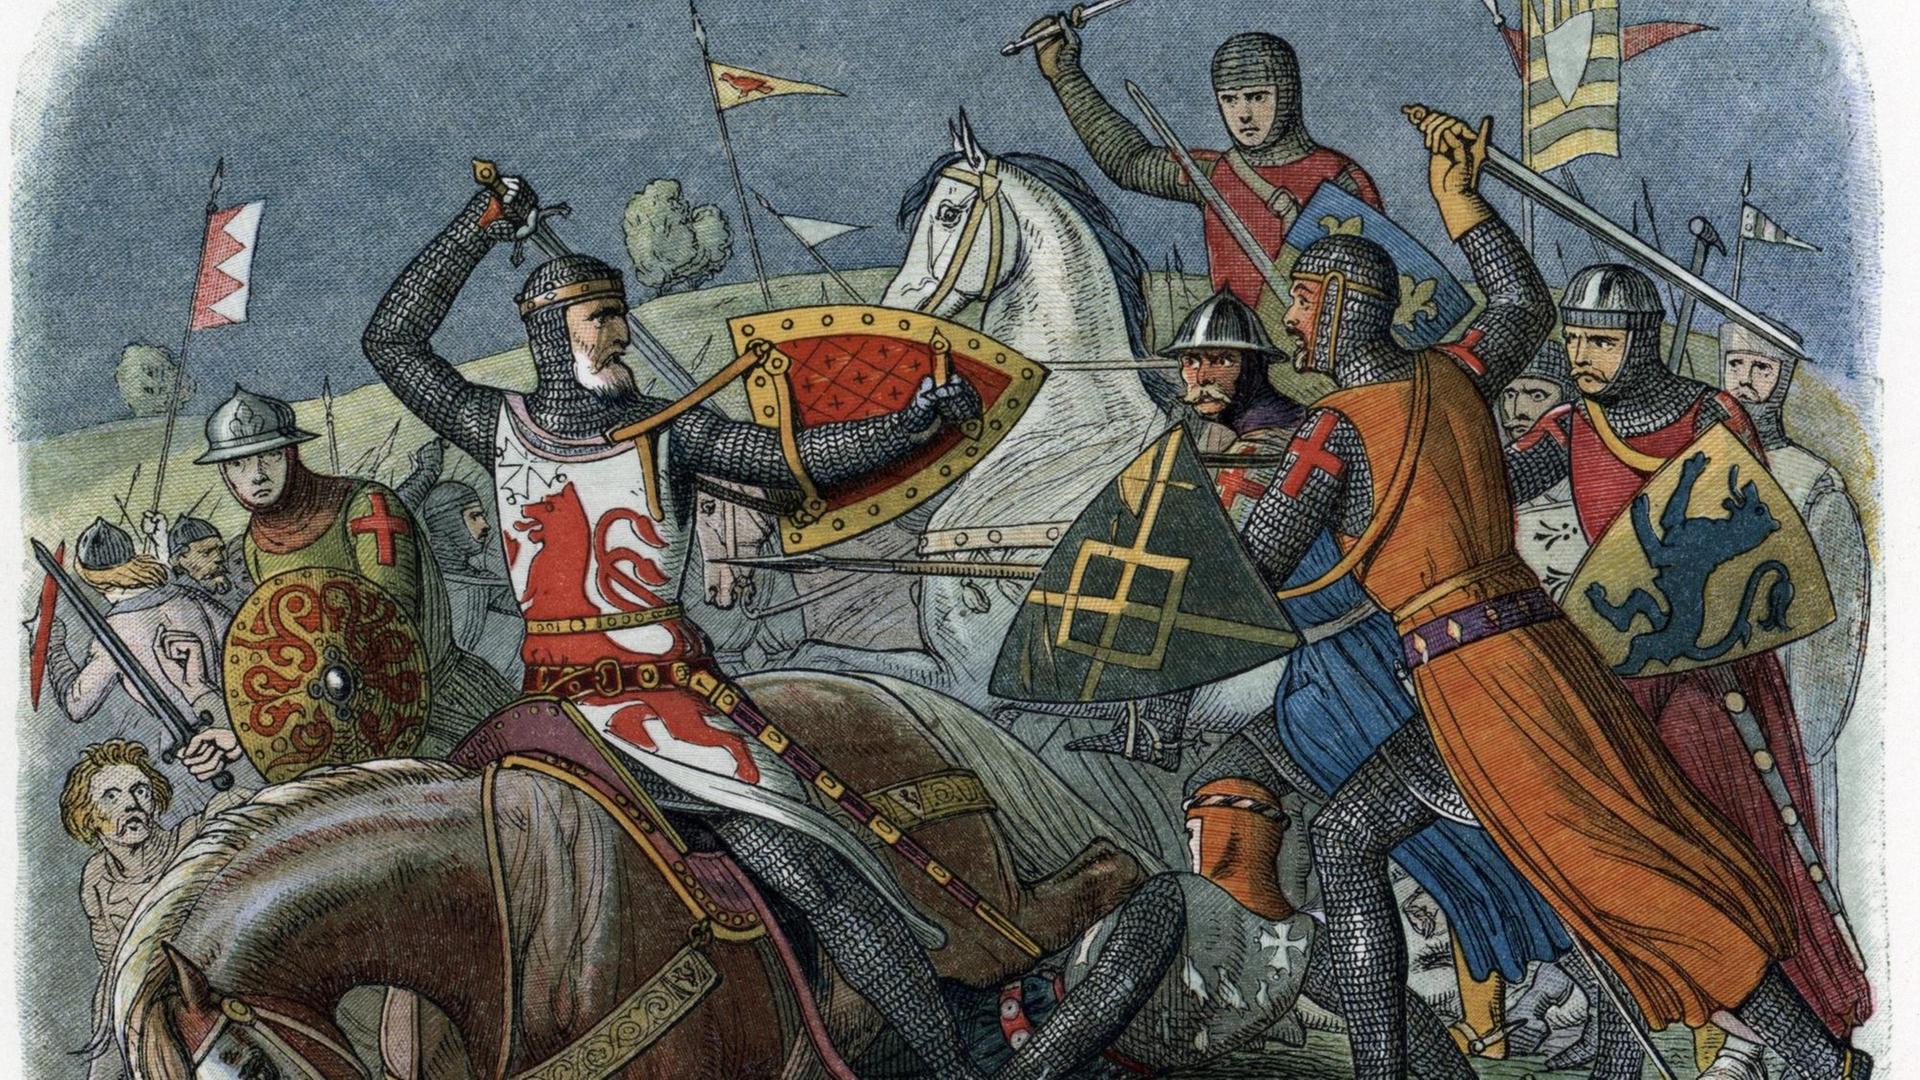 Darstellung der Schlacht von Evesham, bei der Graf Simon de Montfort ums Leben kam